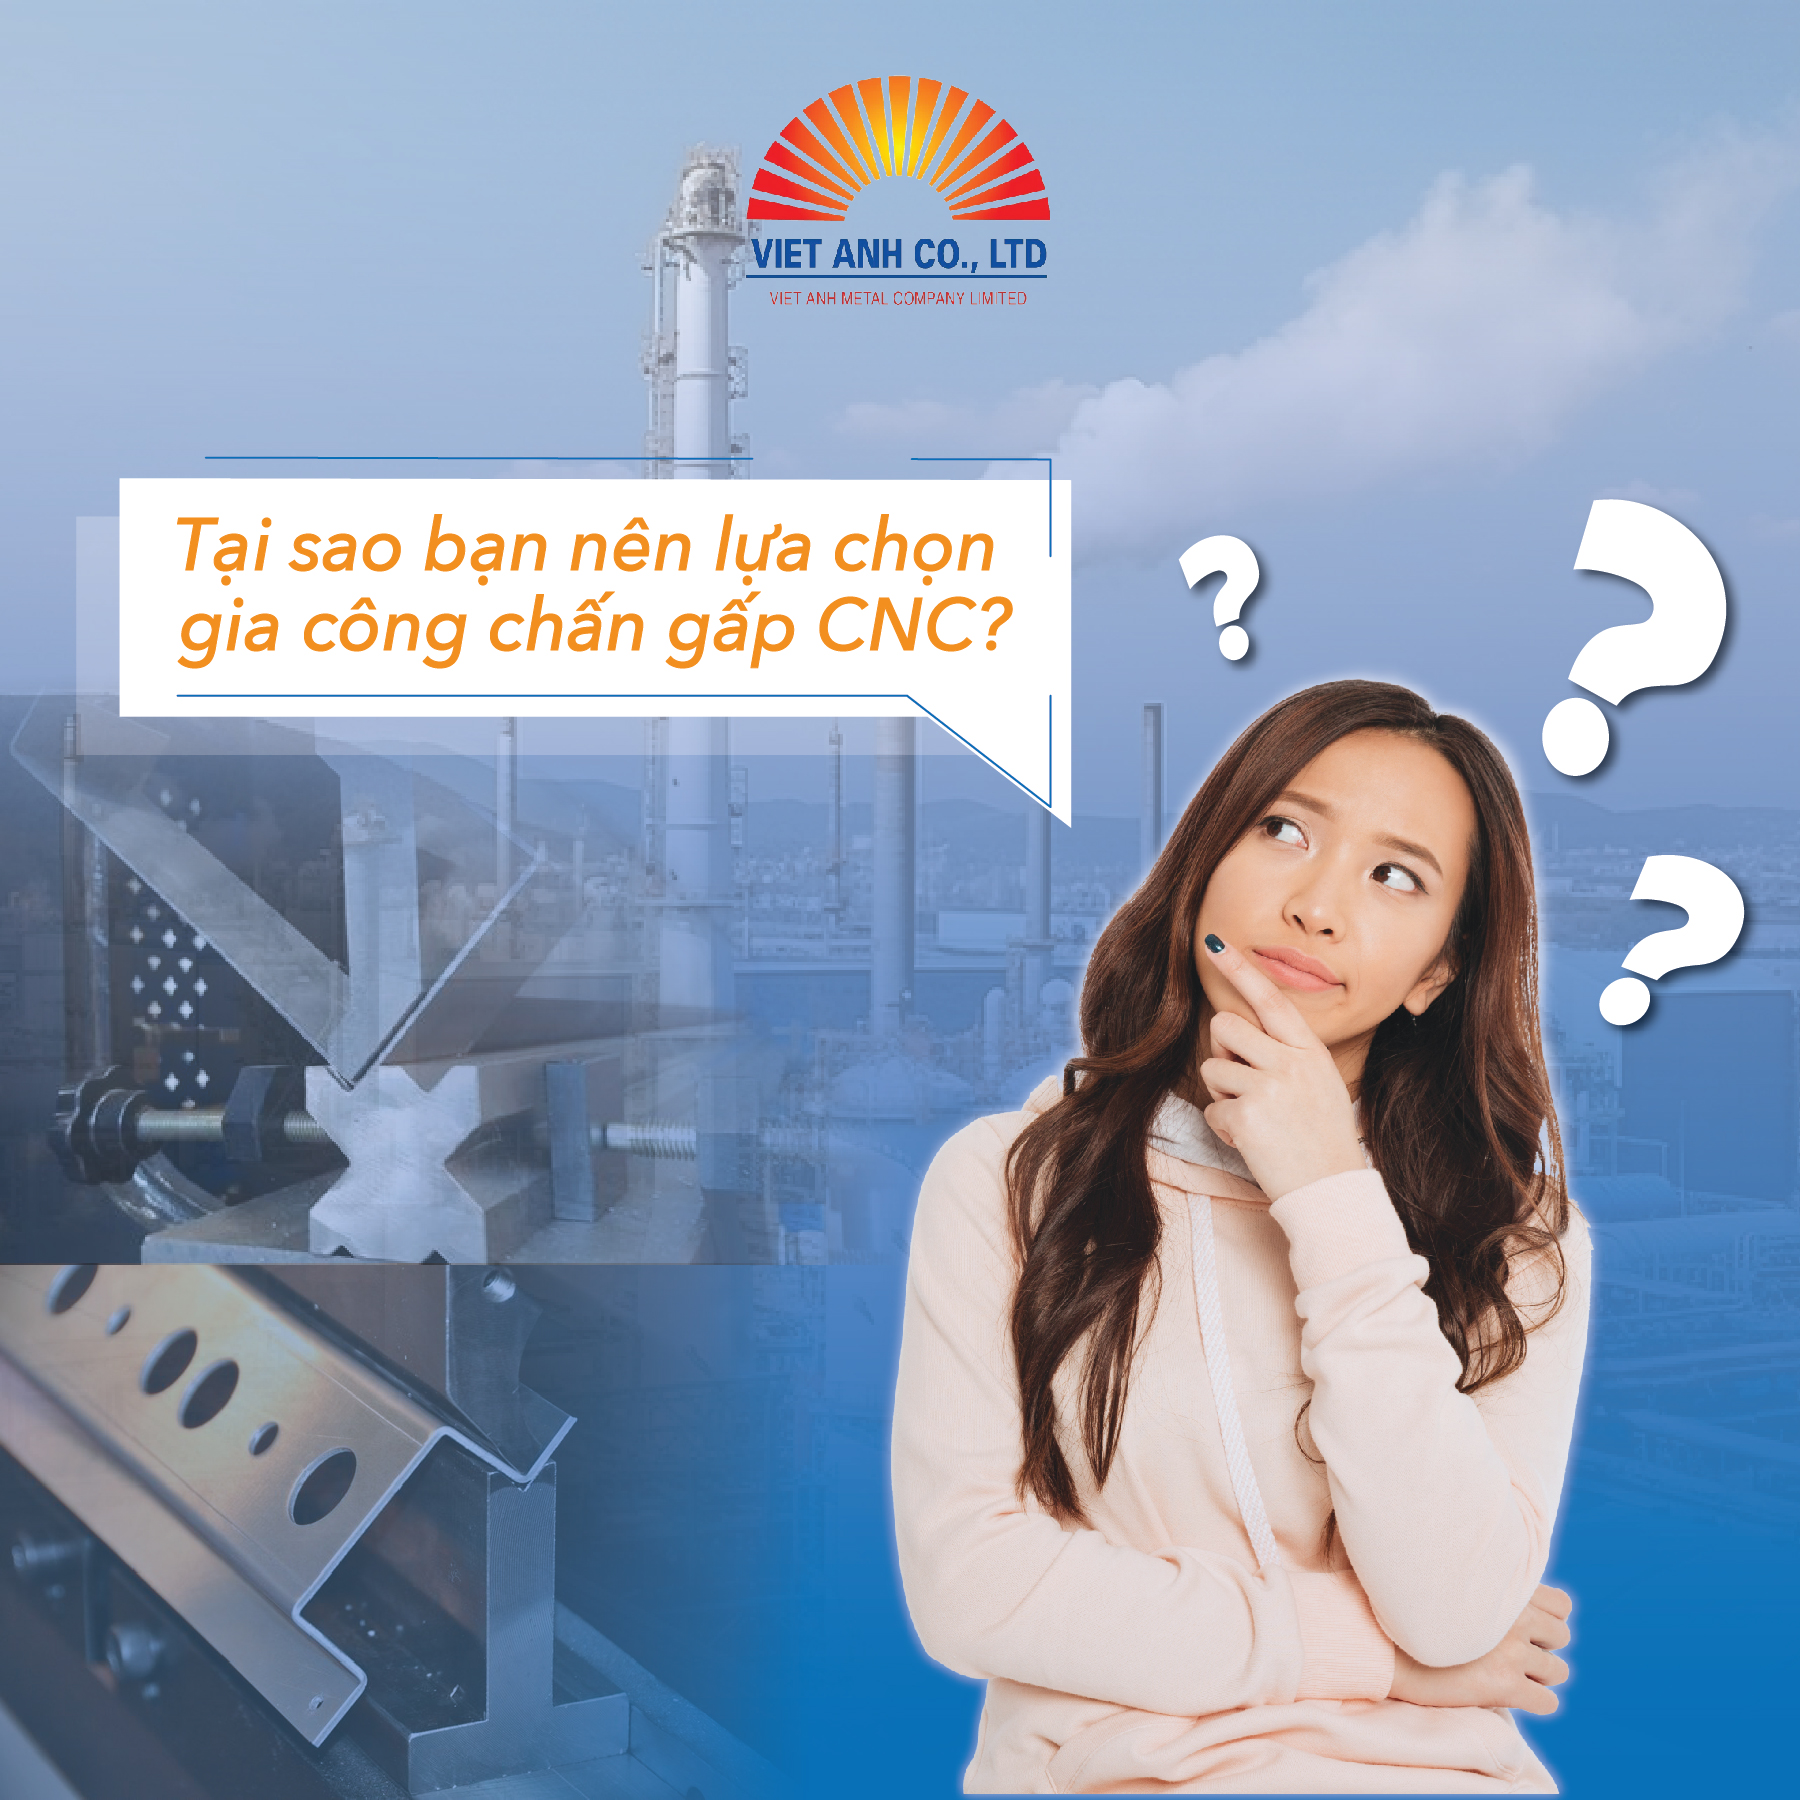 Tại sao bạn nên chọn gia công chấn gấp CNC